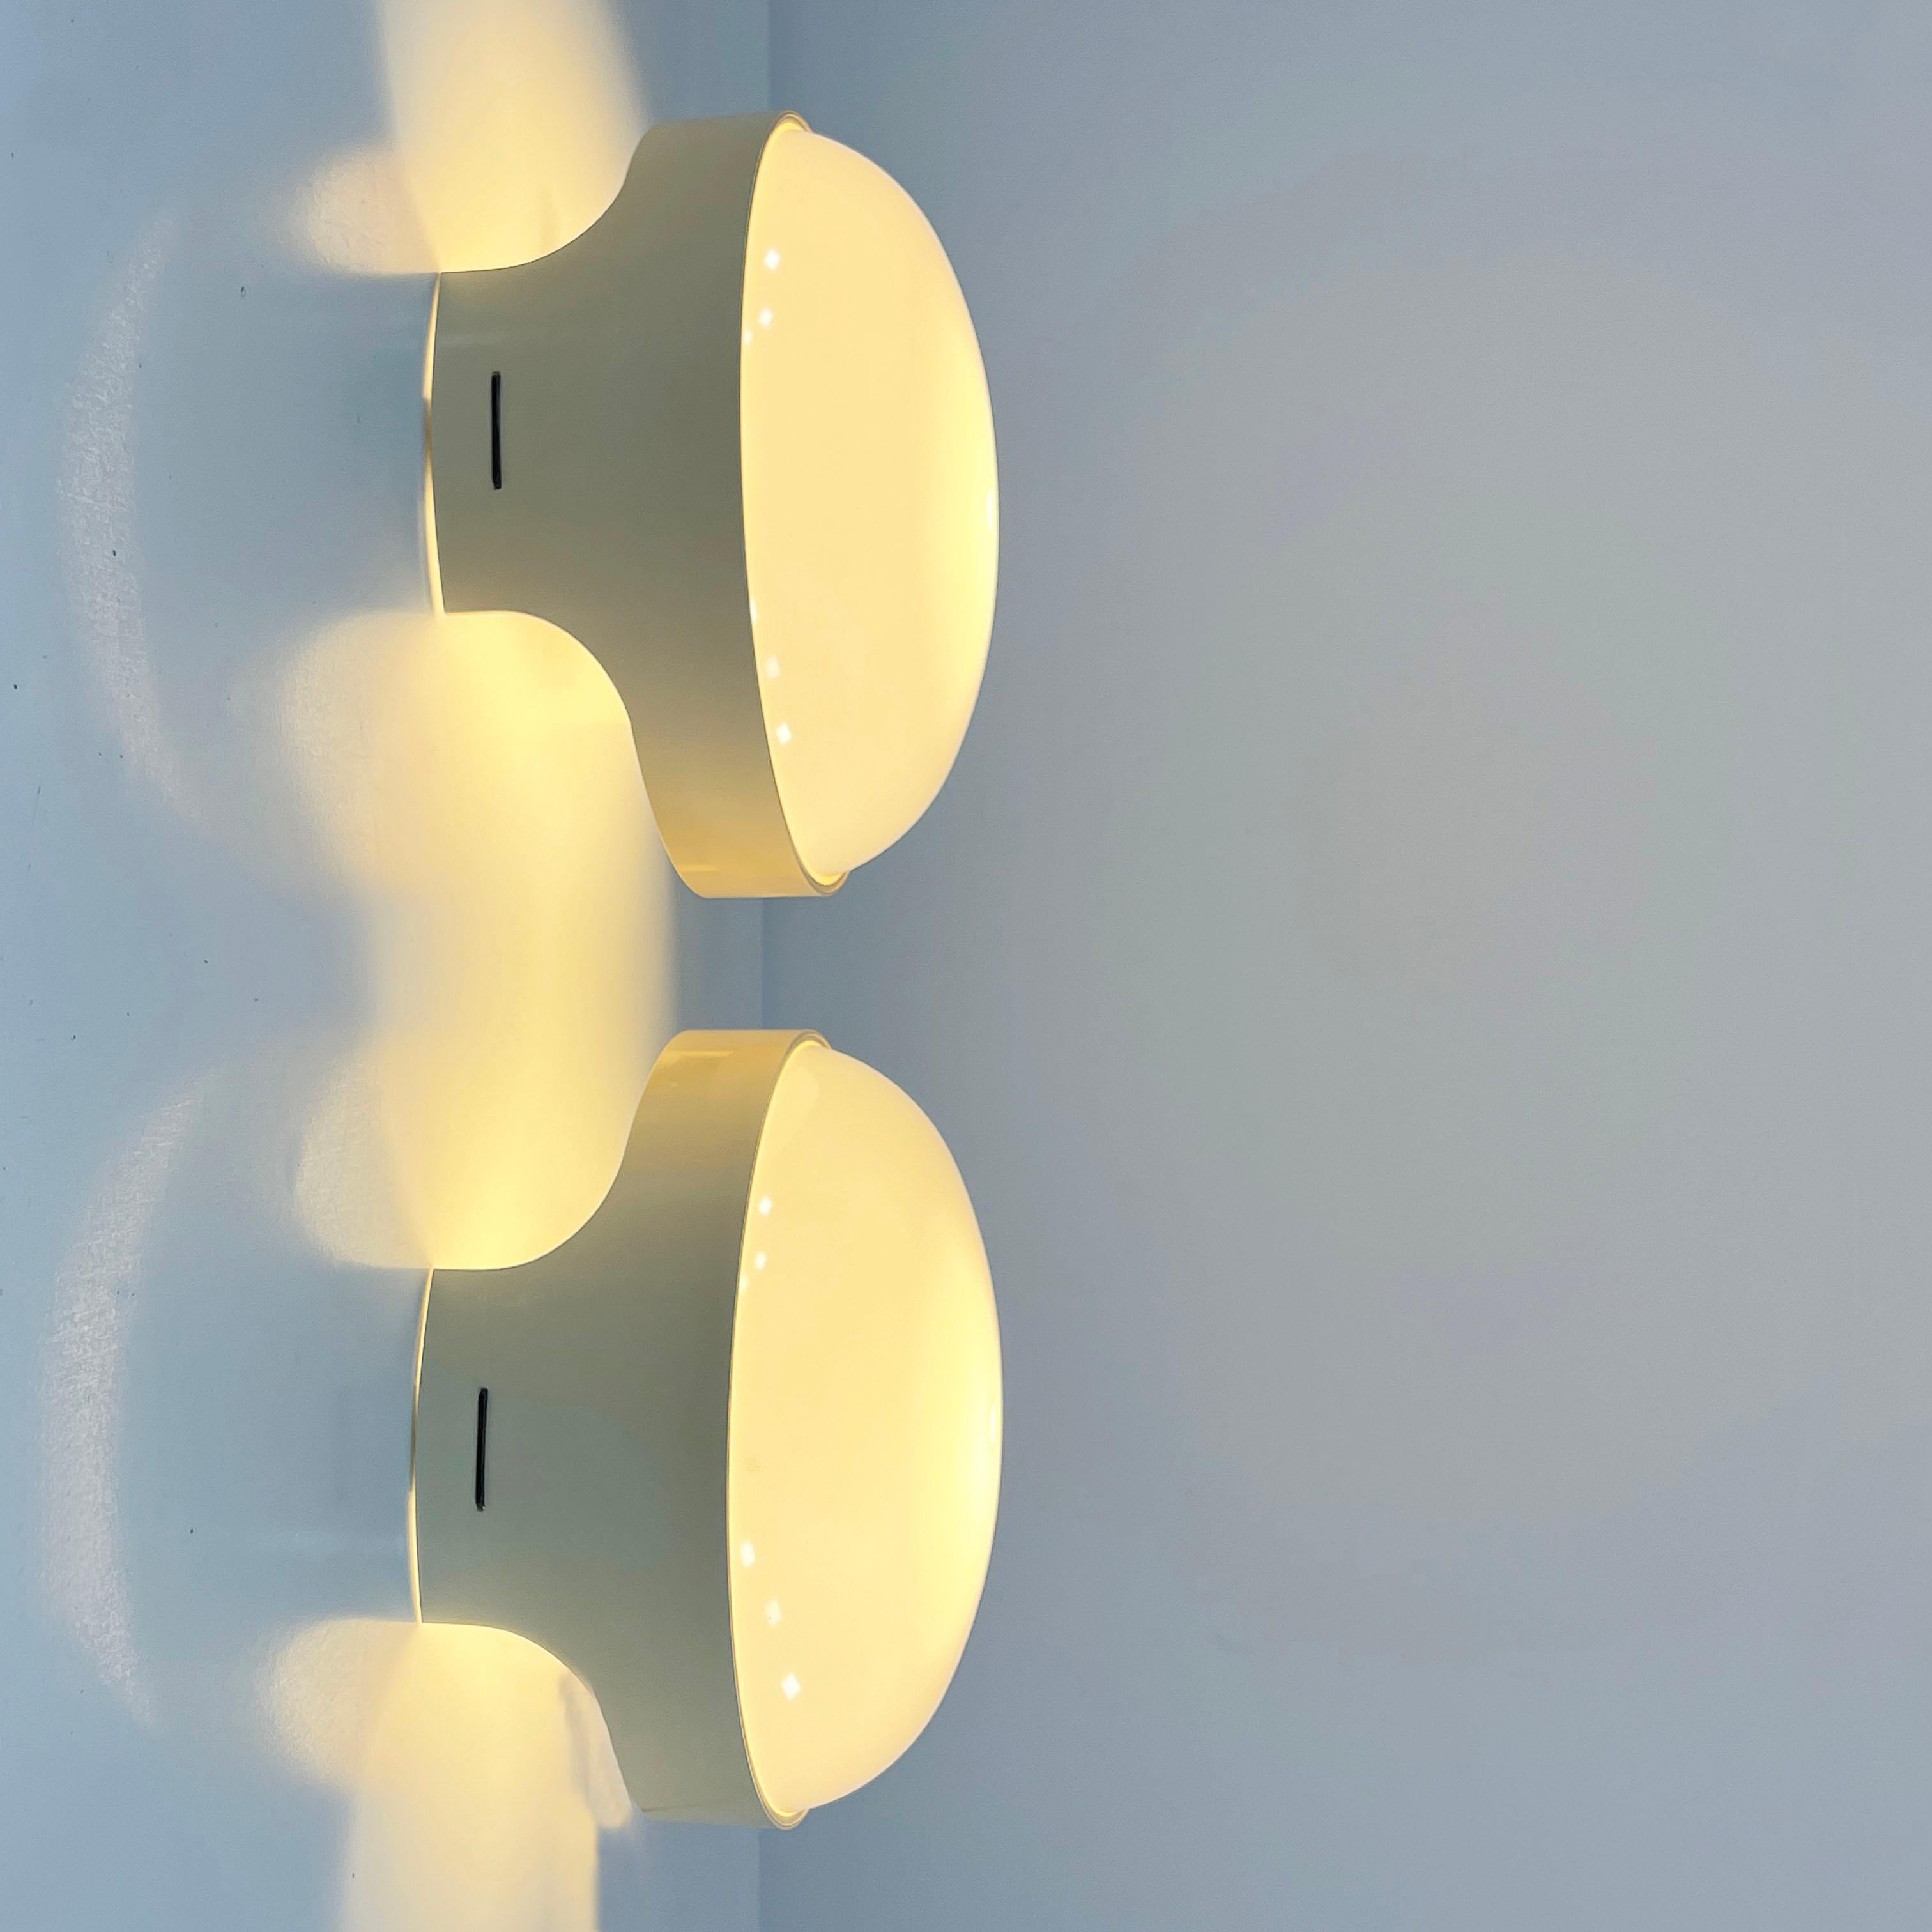 Designer - Joe Colombo
Producteur - Kartell
Modèle - Lampe murale Quattro KD 4335 
Période de conception - années 60
Dimensions - Largeur 25 cm x Profondeur 25 cm x Hauteur 14 cm
Matériaux - Plastique
Couleur - Whiting/Beige
Propriétés électriques -